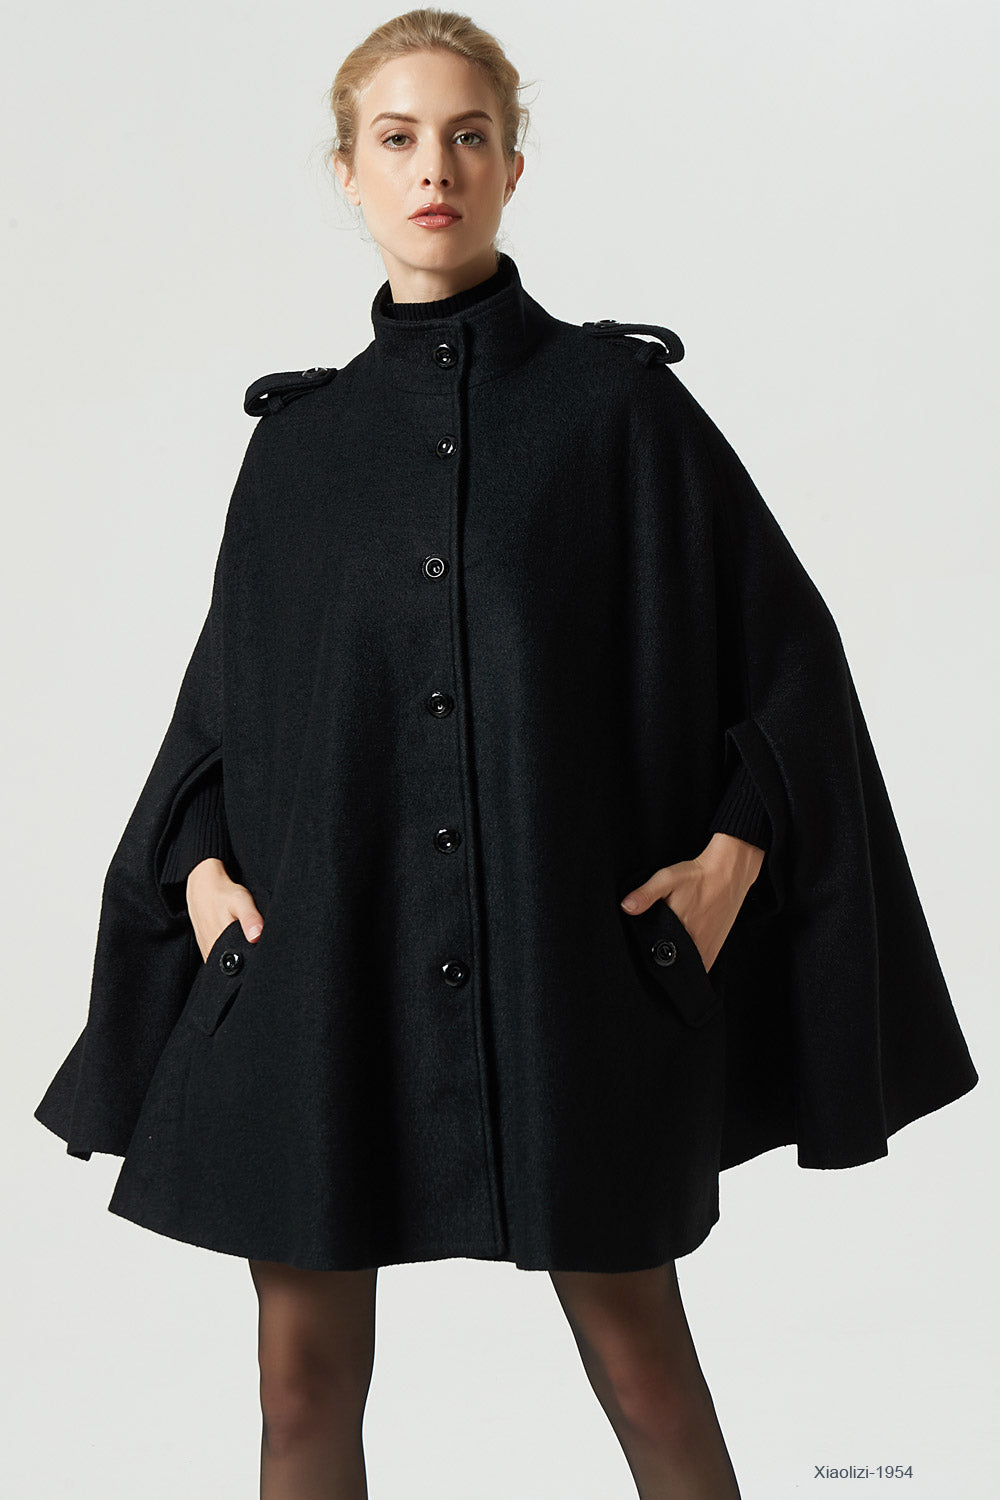 black wool cape plus size cape for women 1954#